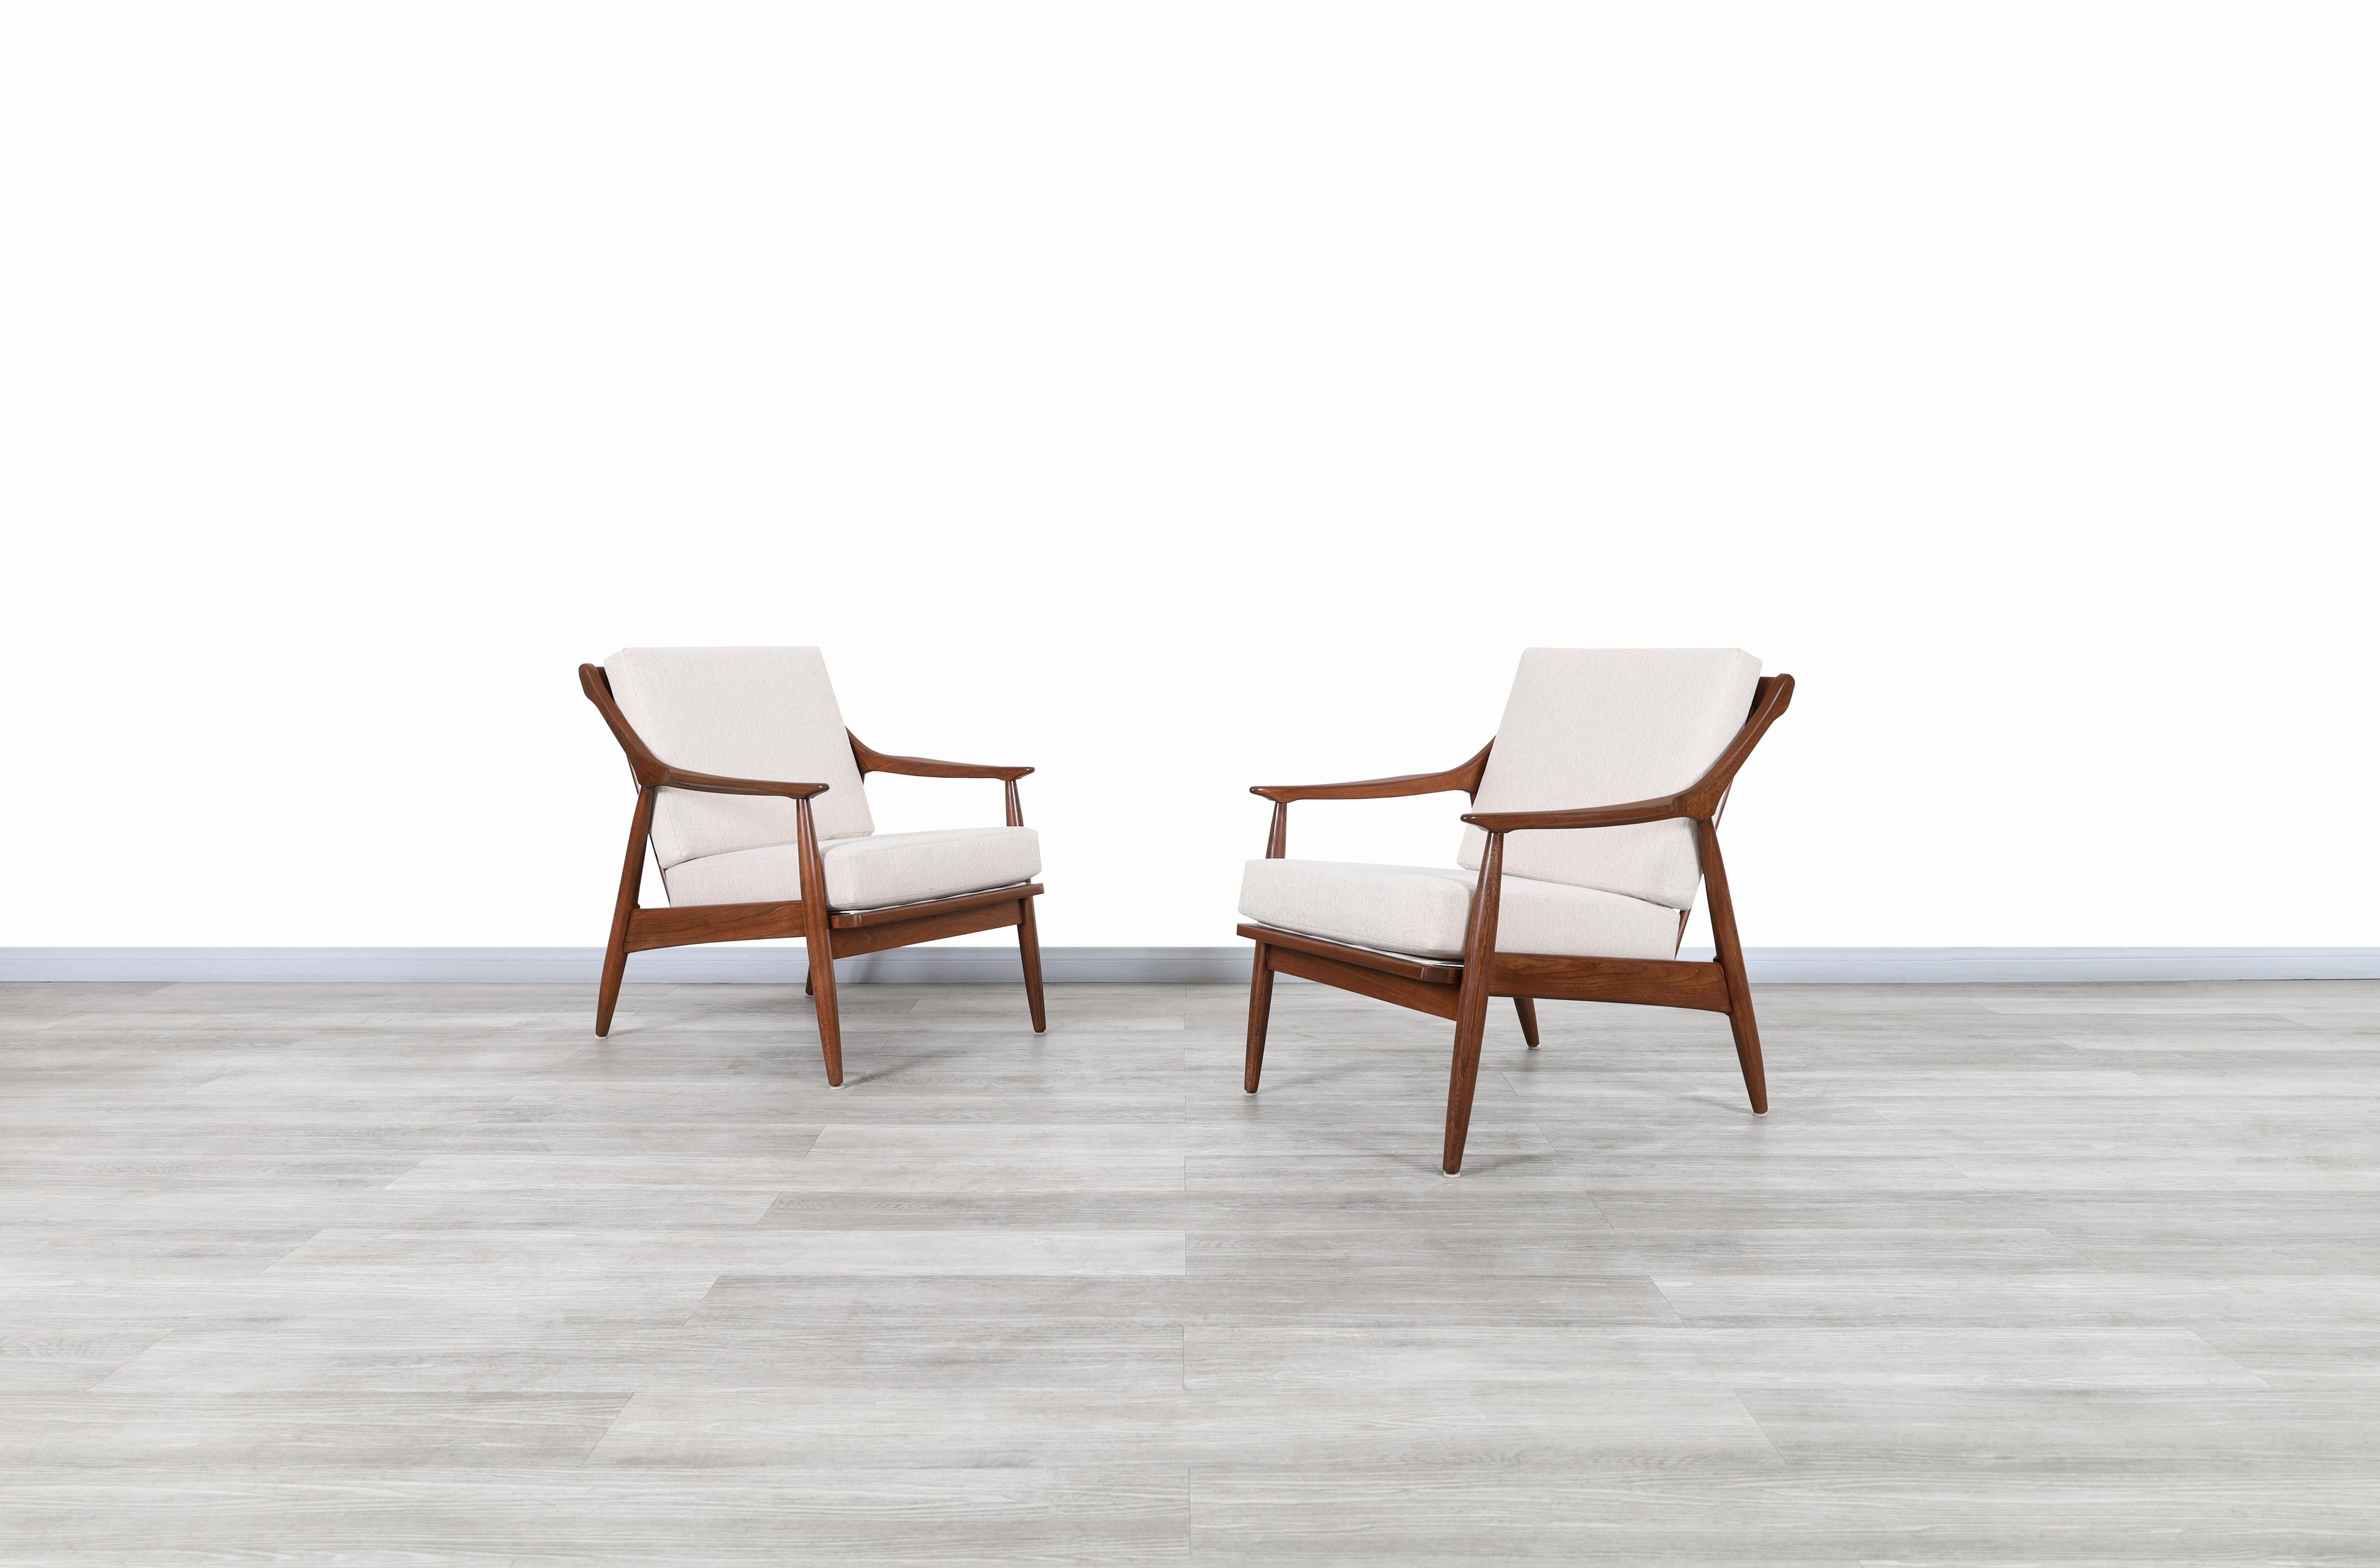 Superbes chaises longues en noyer du milieu du siècle dernier, réalisées par Kurt Ostervig pour James Mobler aux États-Unis, vers les années 1960. Ces chaises ont été fabriquées à partir de bois de noyer de la plus haute qualité et présentent un